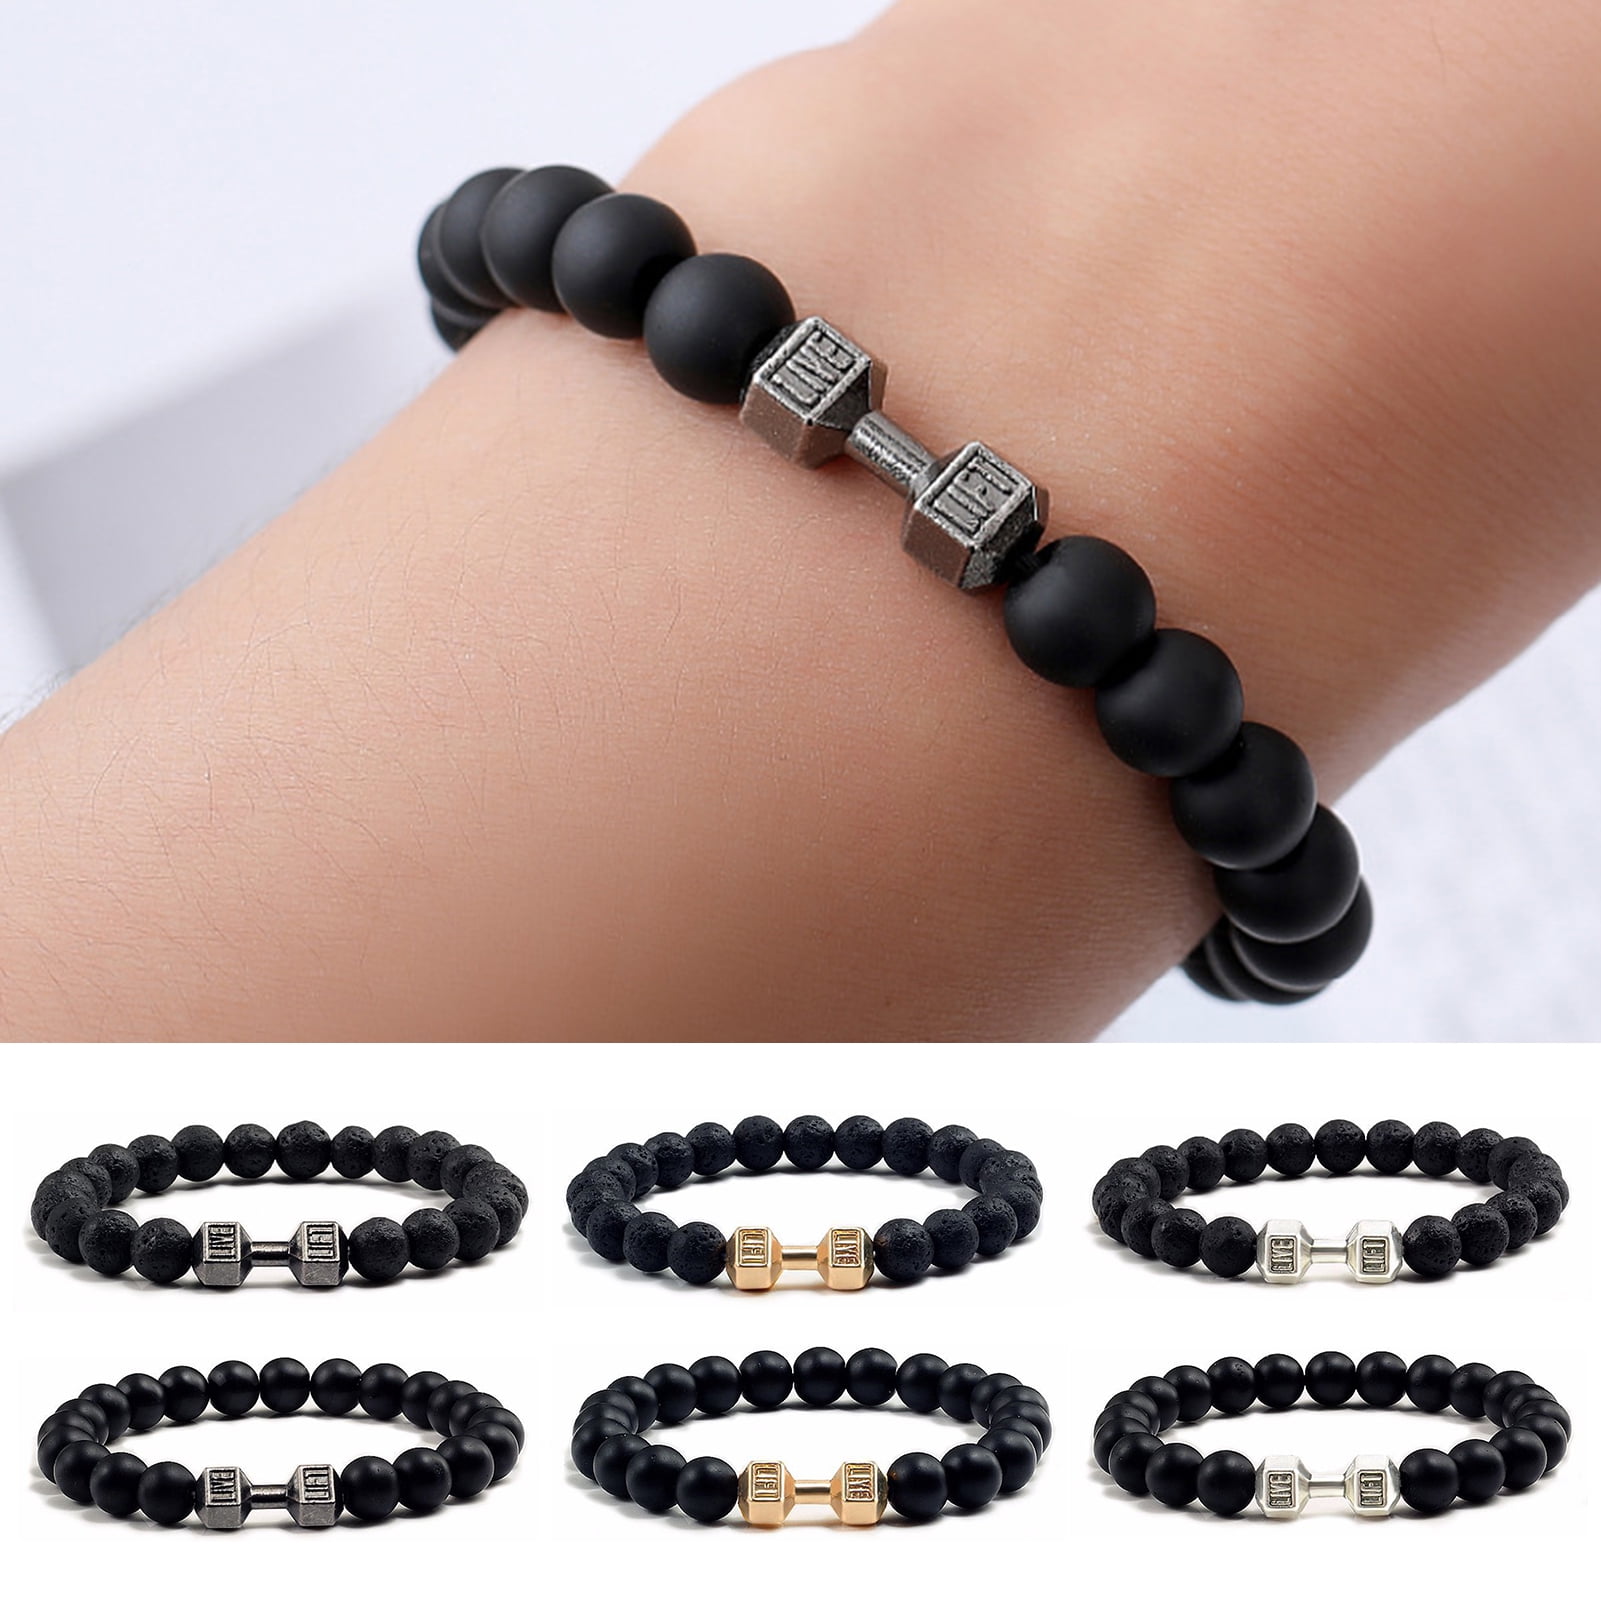 Buy Custom Beaded Bracelet 4mm Matte Beads Stack Bracelet Skinny Bracelet  14kt Gold Filled Beads Online in India - Etsy